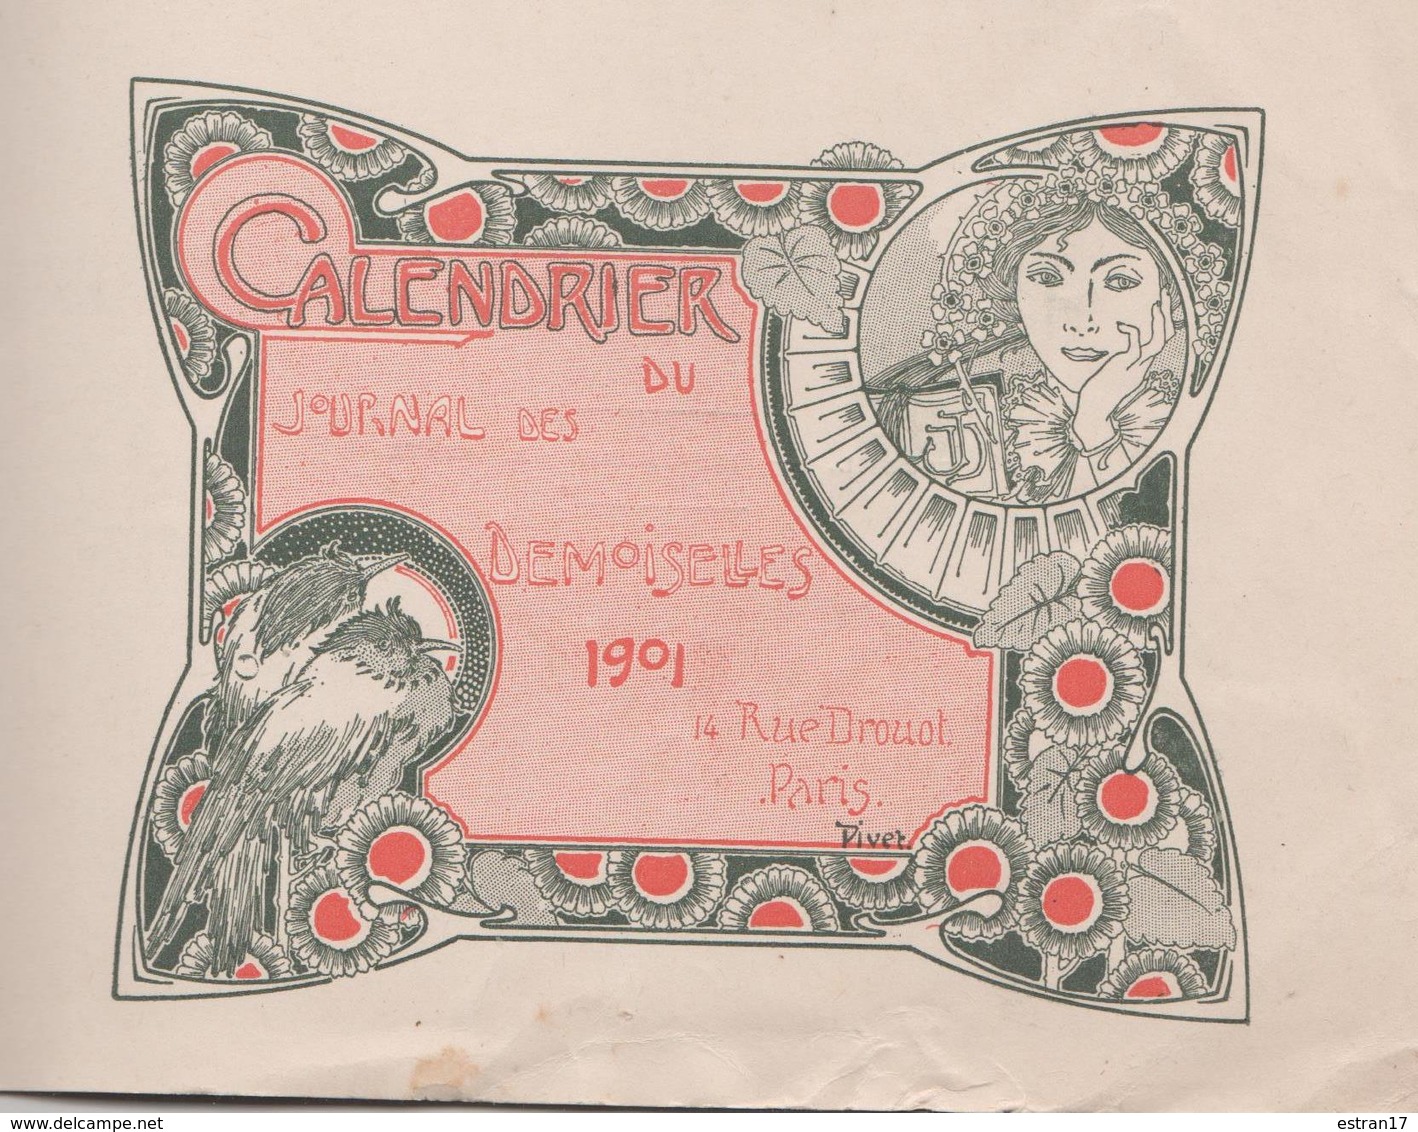 1901 CALENDRIER DU JOURNAL DES DEMOISELLES 14 RUE DROUOT PARIS - Tamaño Grande : 1901-20